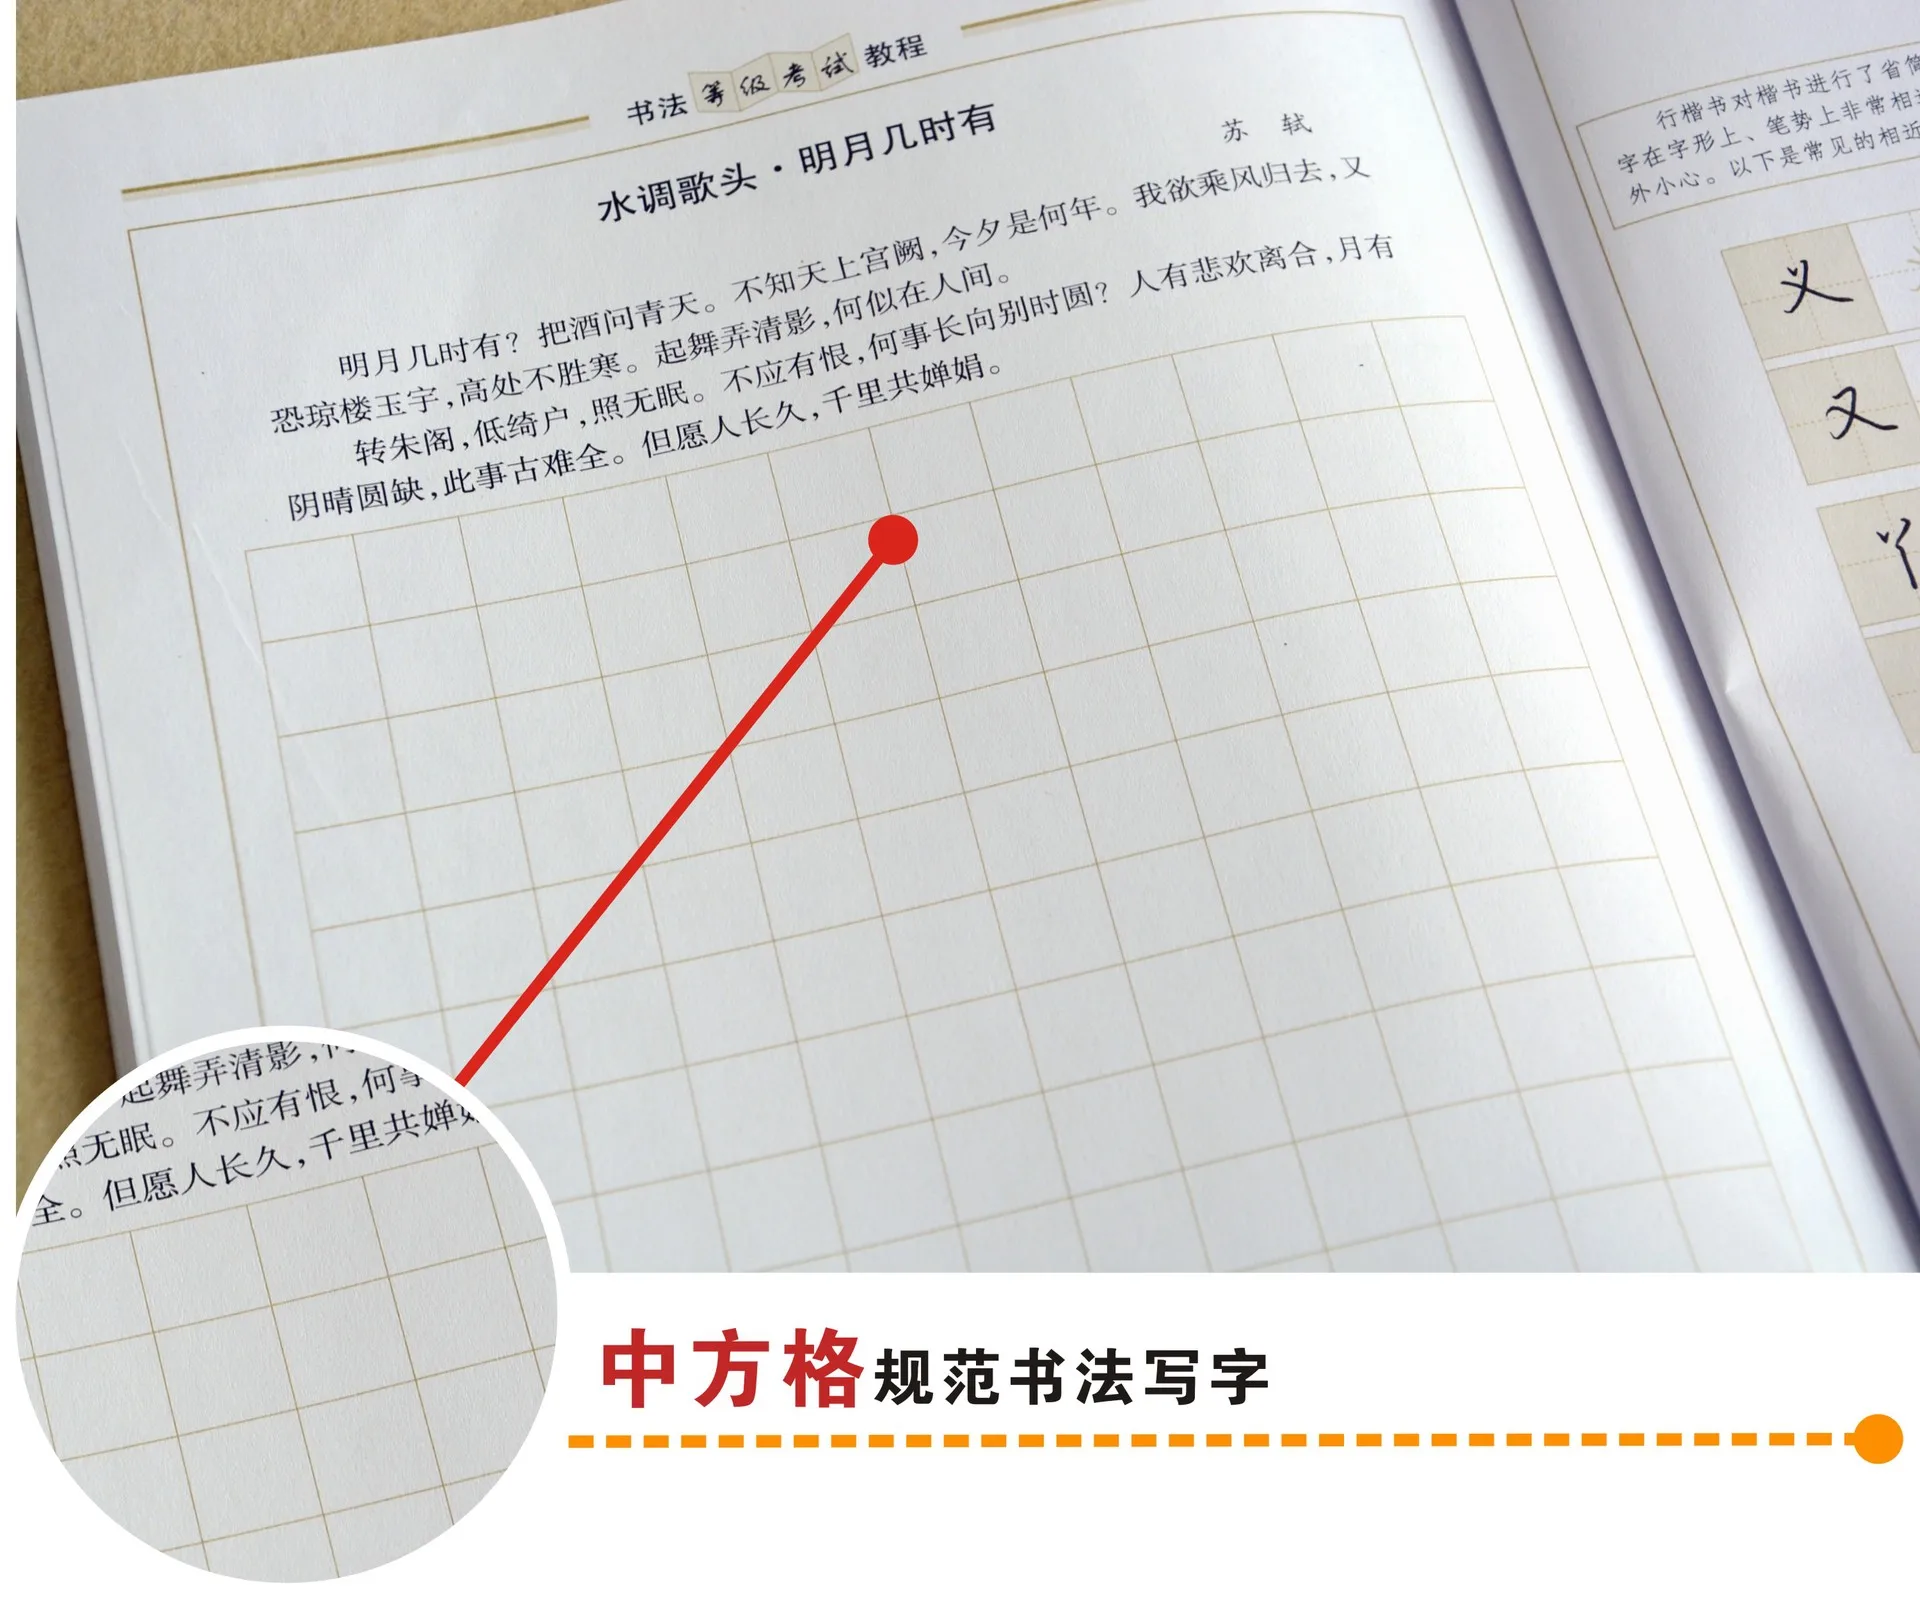 Jing xiao peng чернильная каллиграфия класс экзамена учебник Описание Pro версия обычный скрипт путешествия модель авторучка книги Genuin